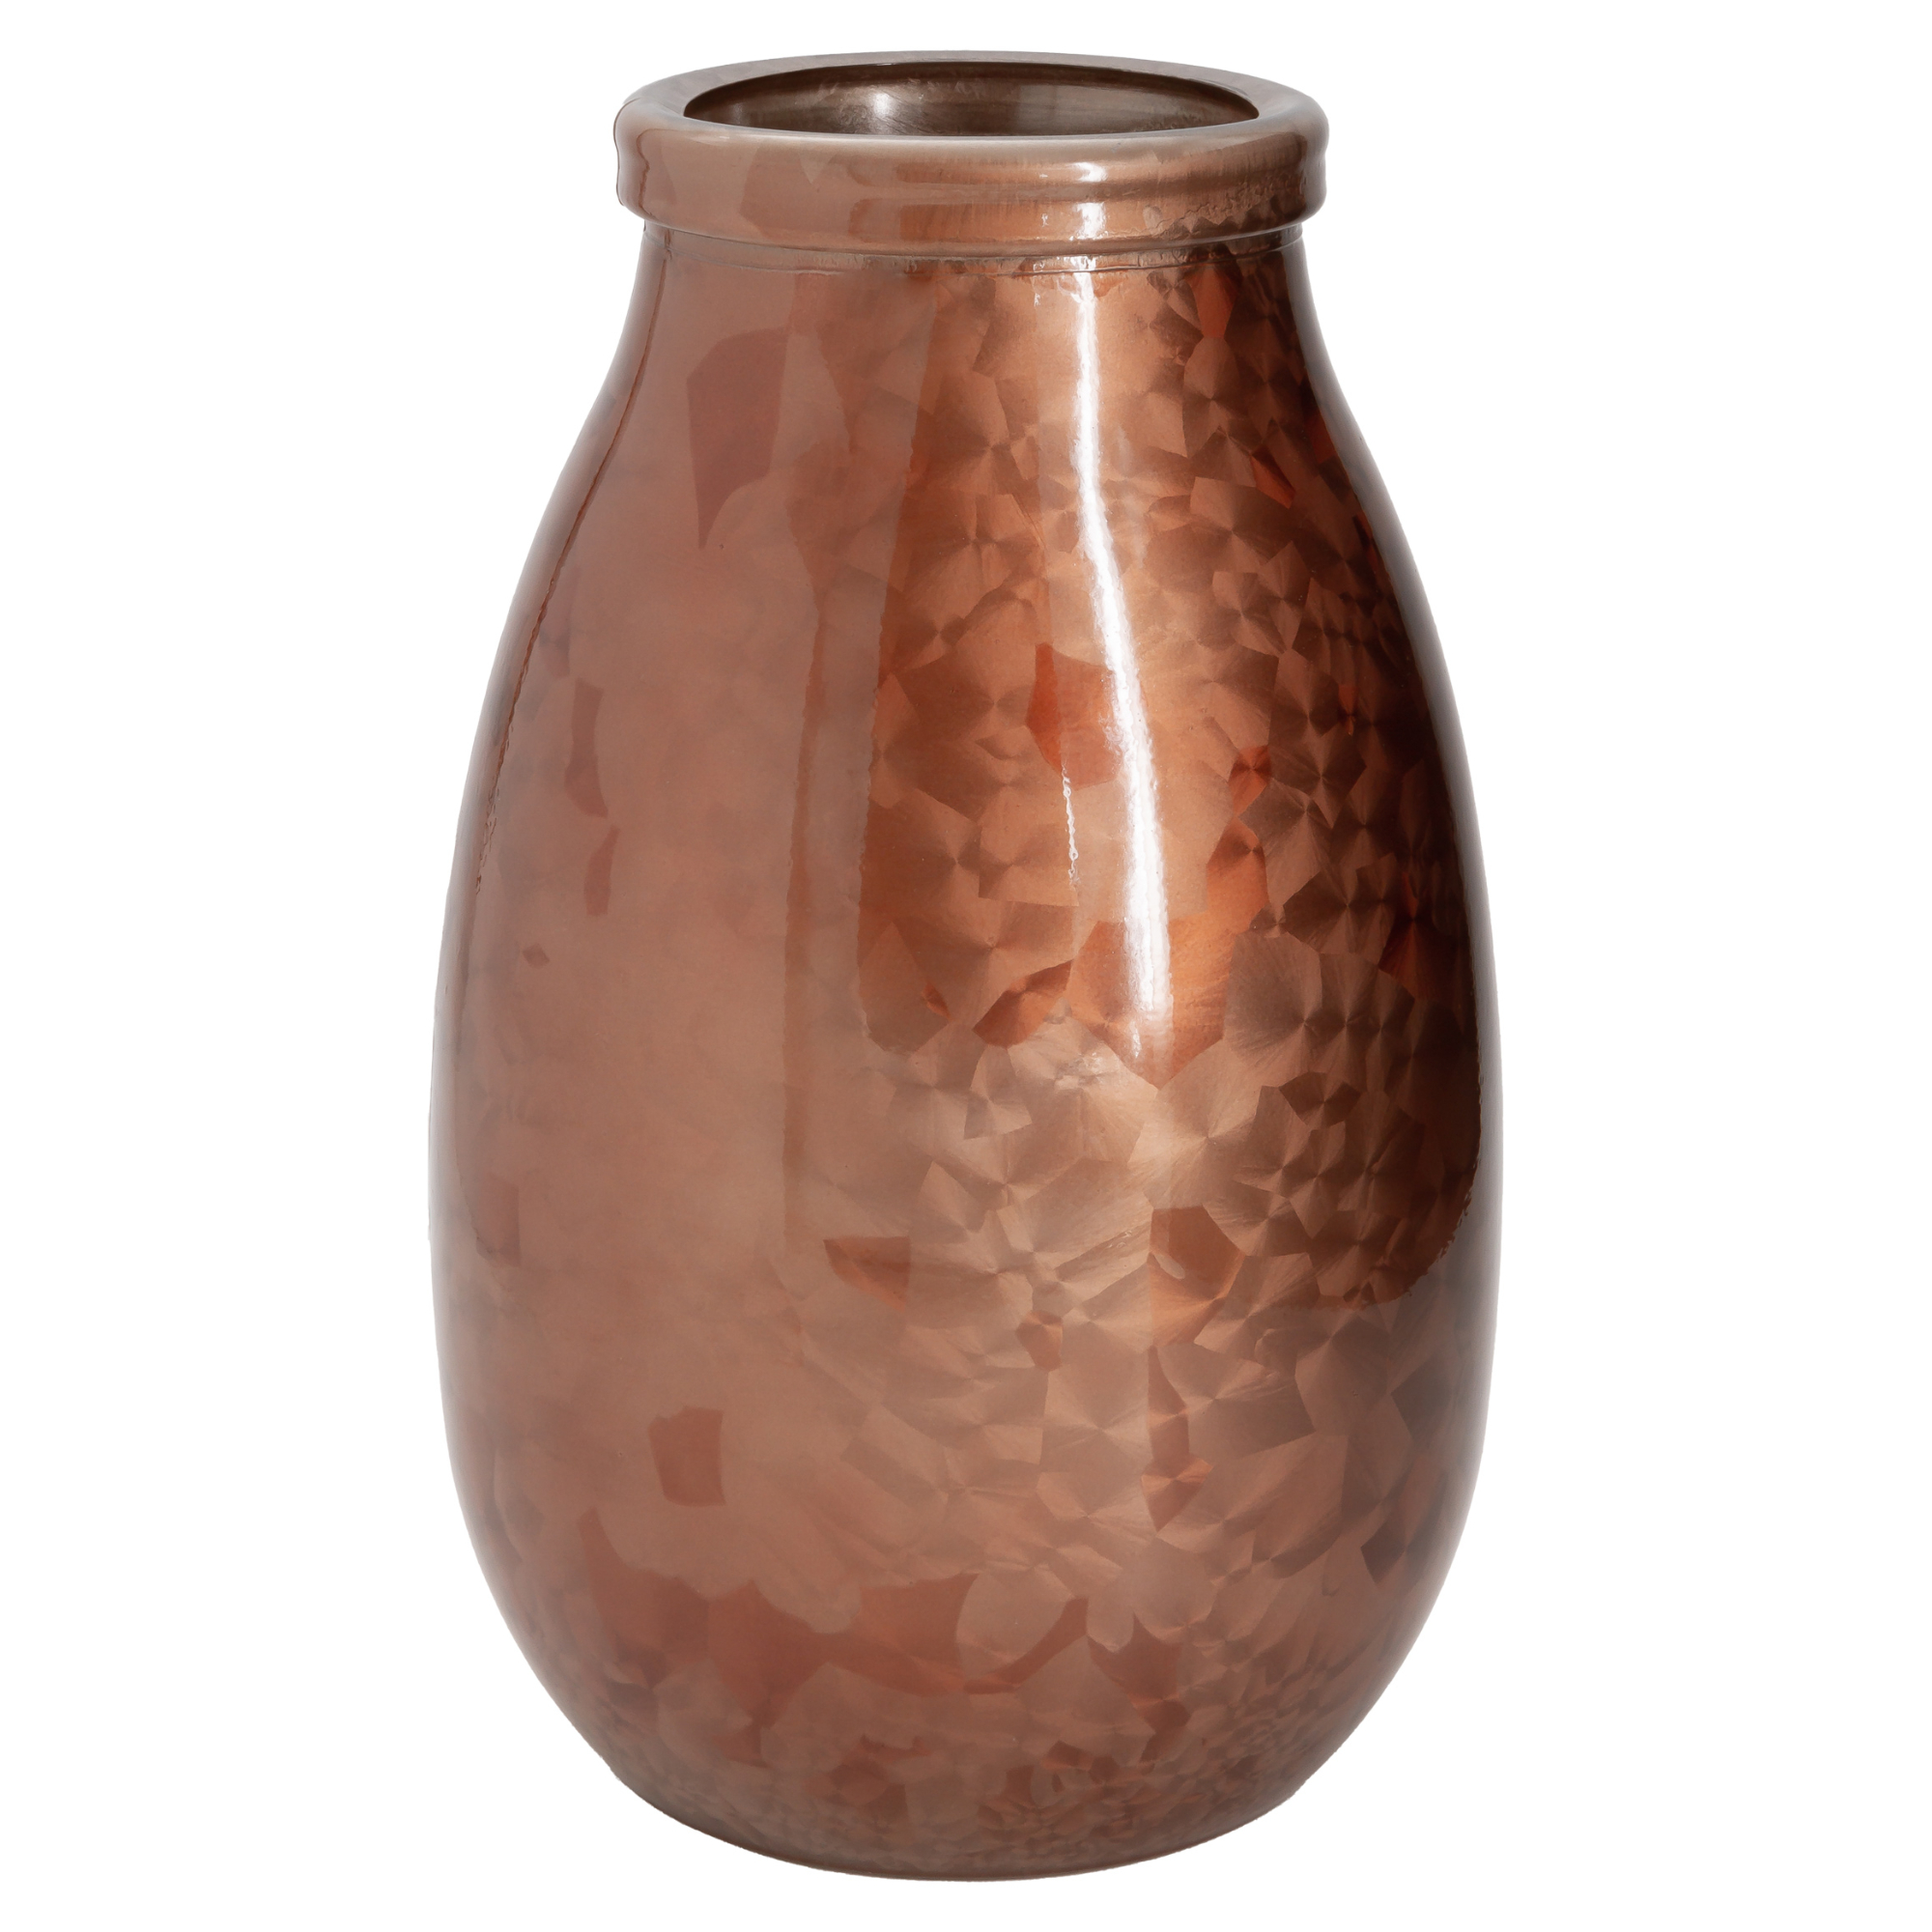 ваза san miguel diamante розовая 28 см Ваза San miguel Montana медный 28 см